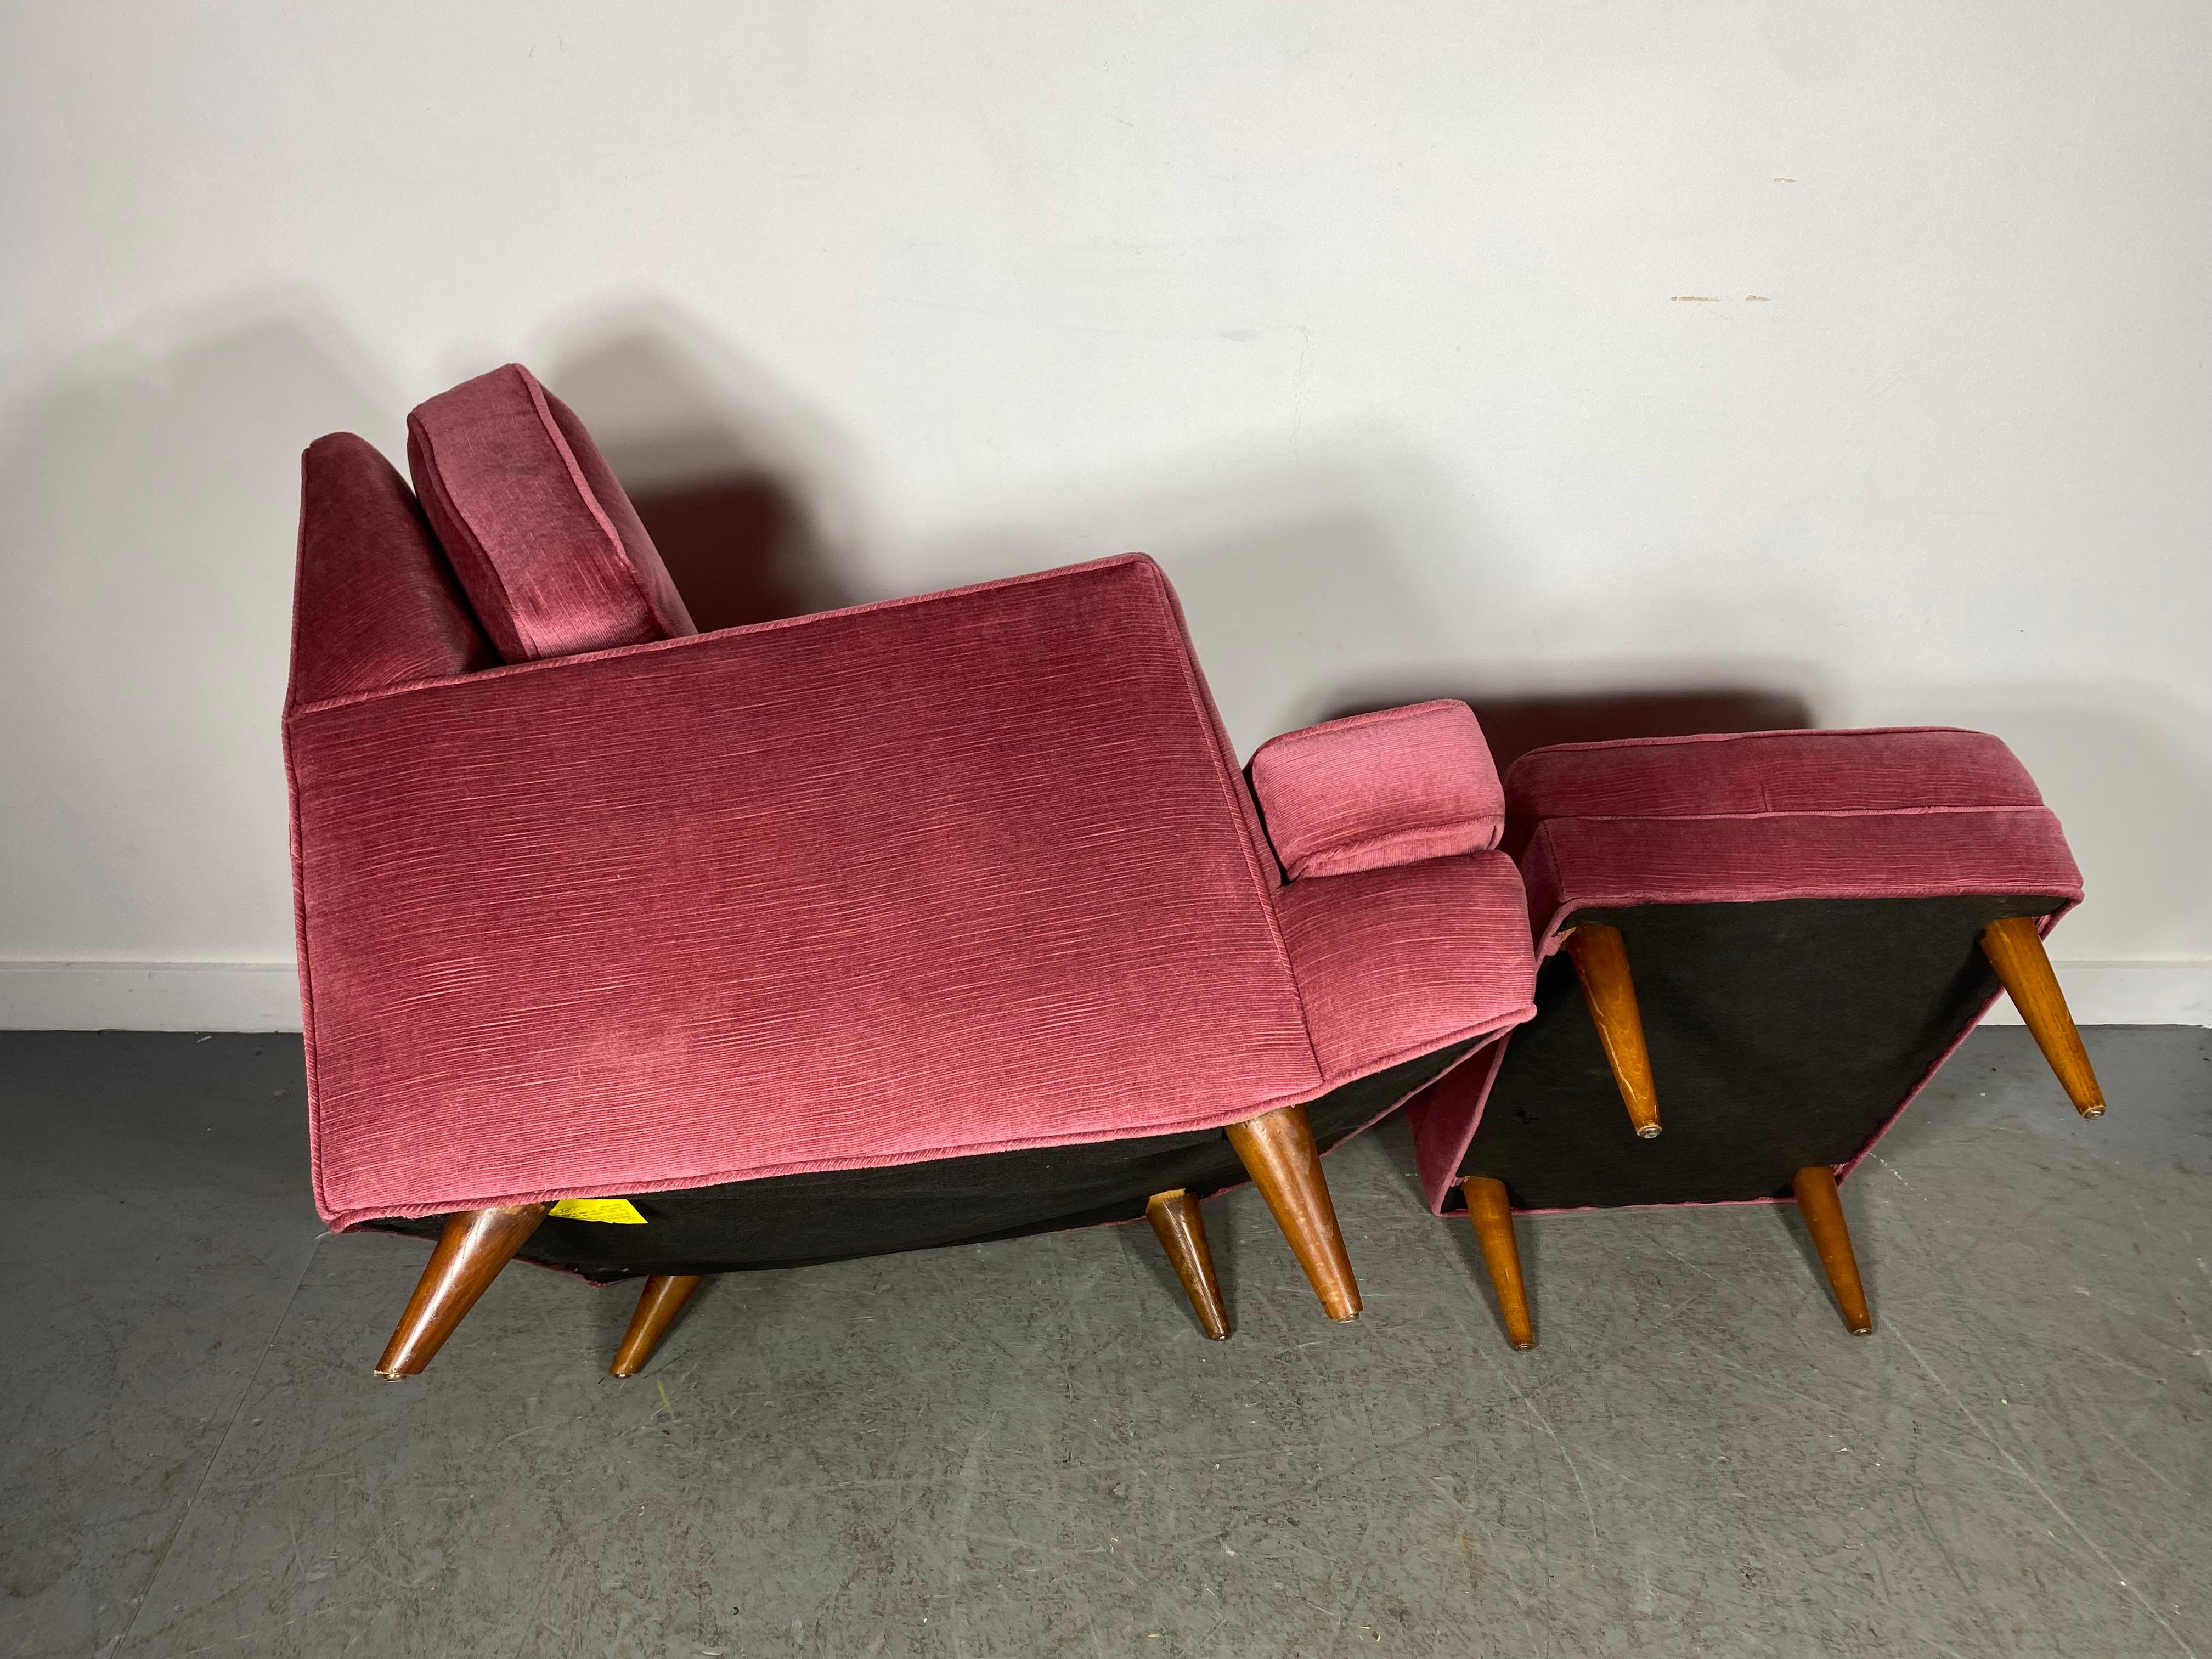 Stunning Modernist Lounge Chair & Ott Oman by Roger Springer for Dunbar For Sale 4